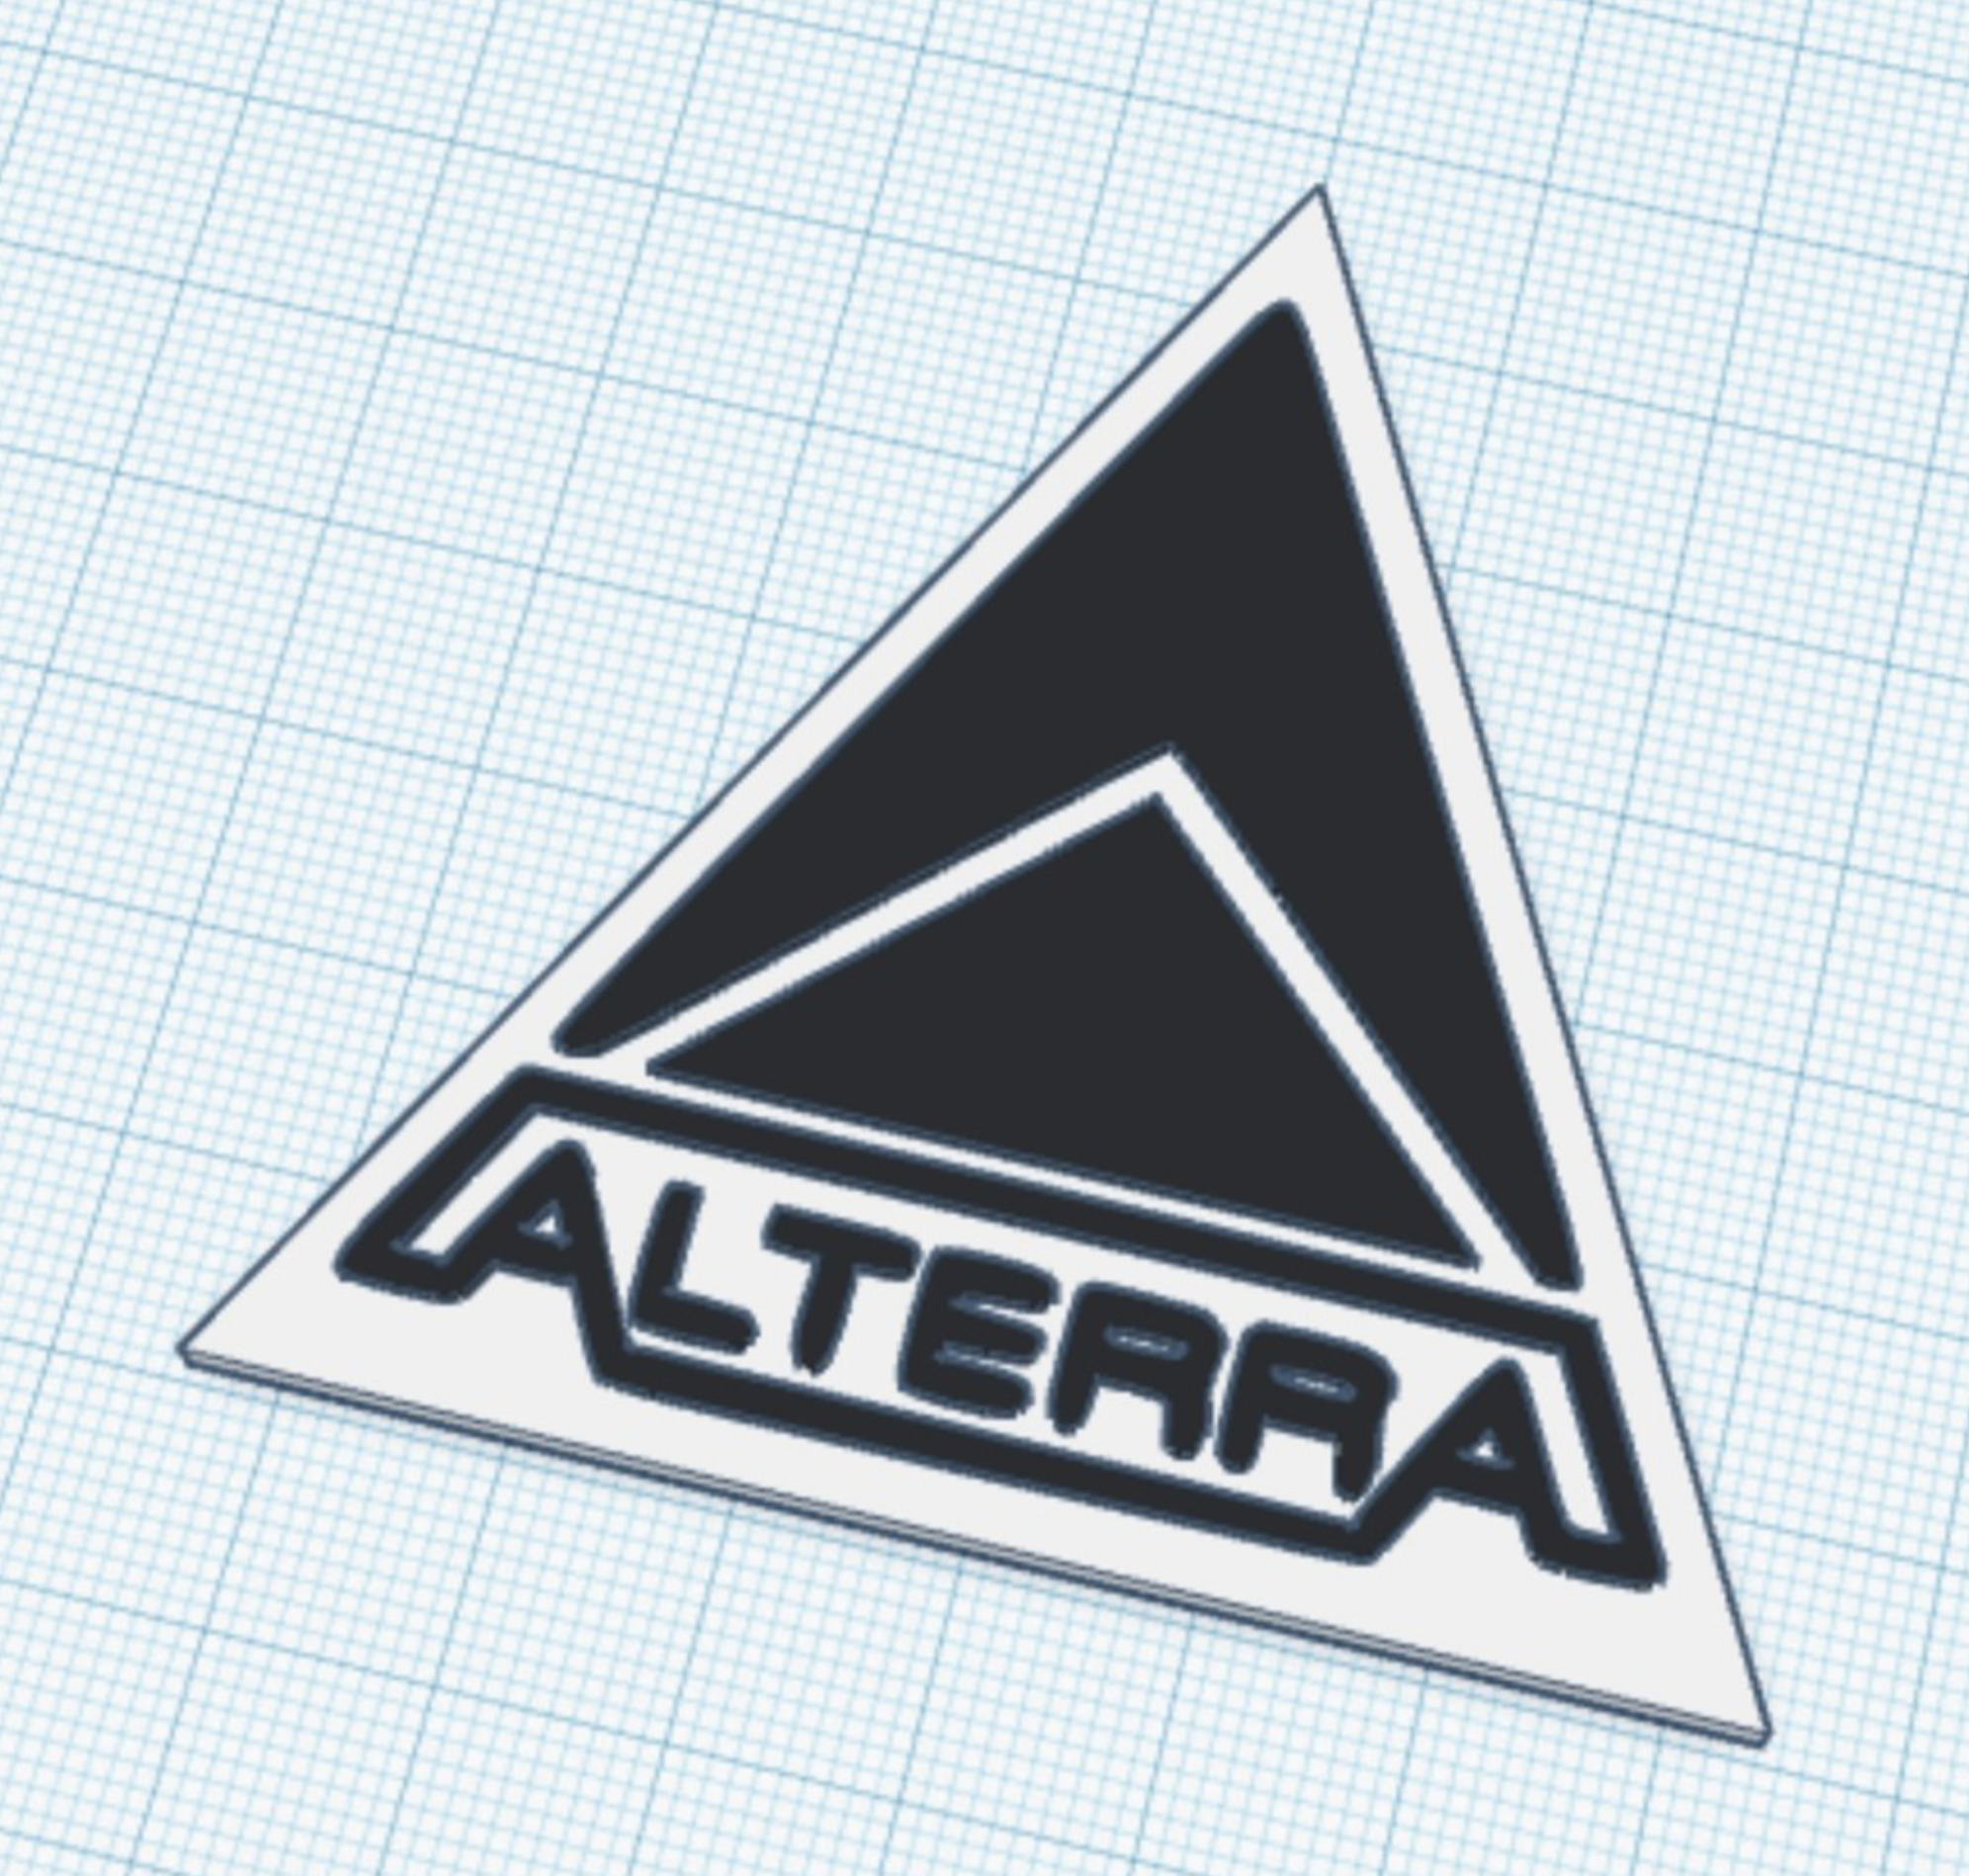 Subnautica - Alterra logo